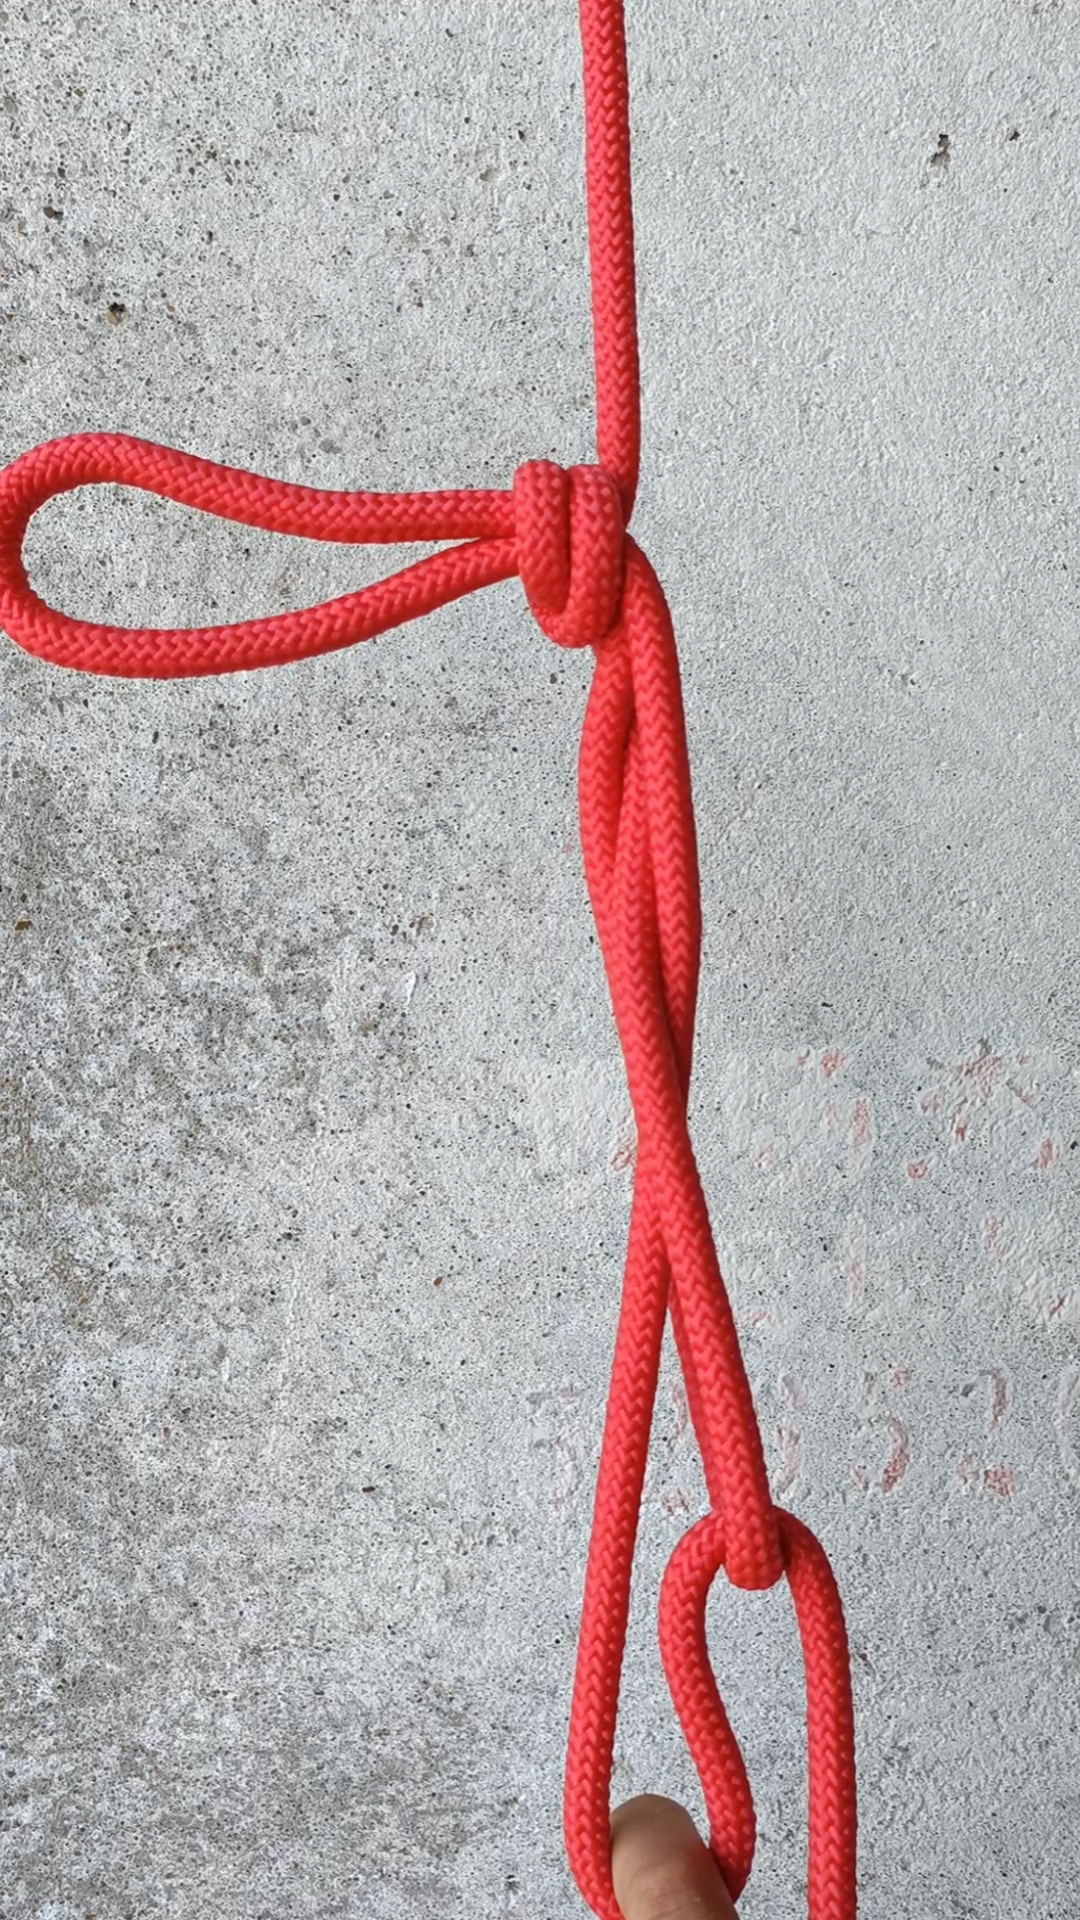 吊装绳扣系法图片图片